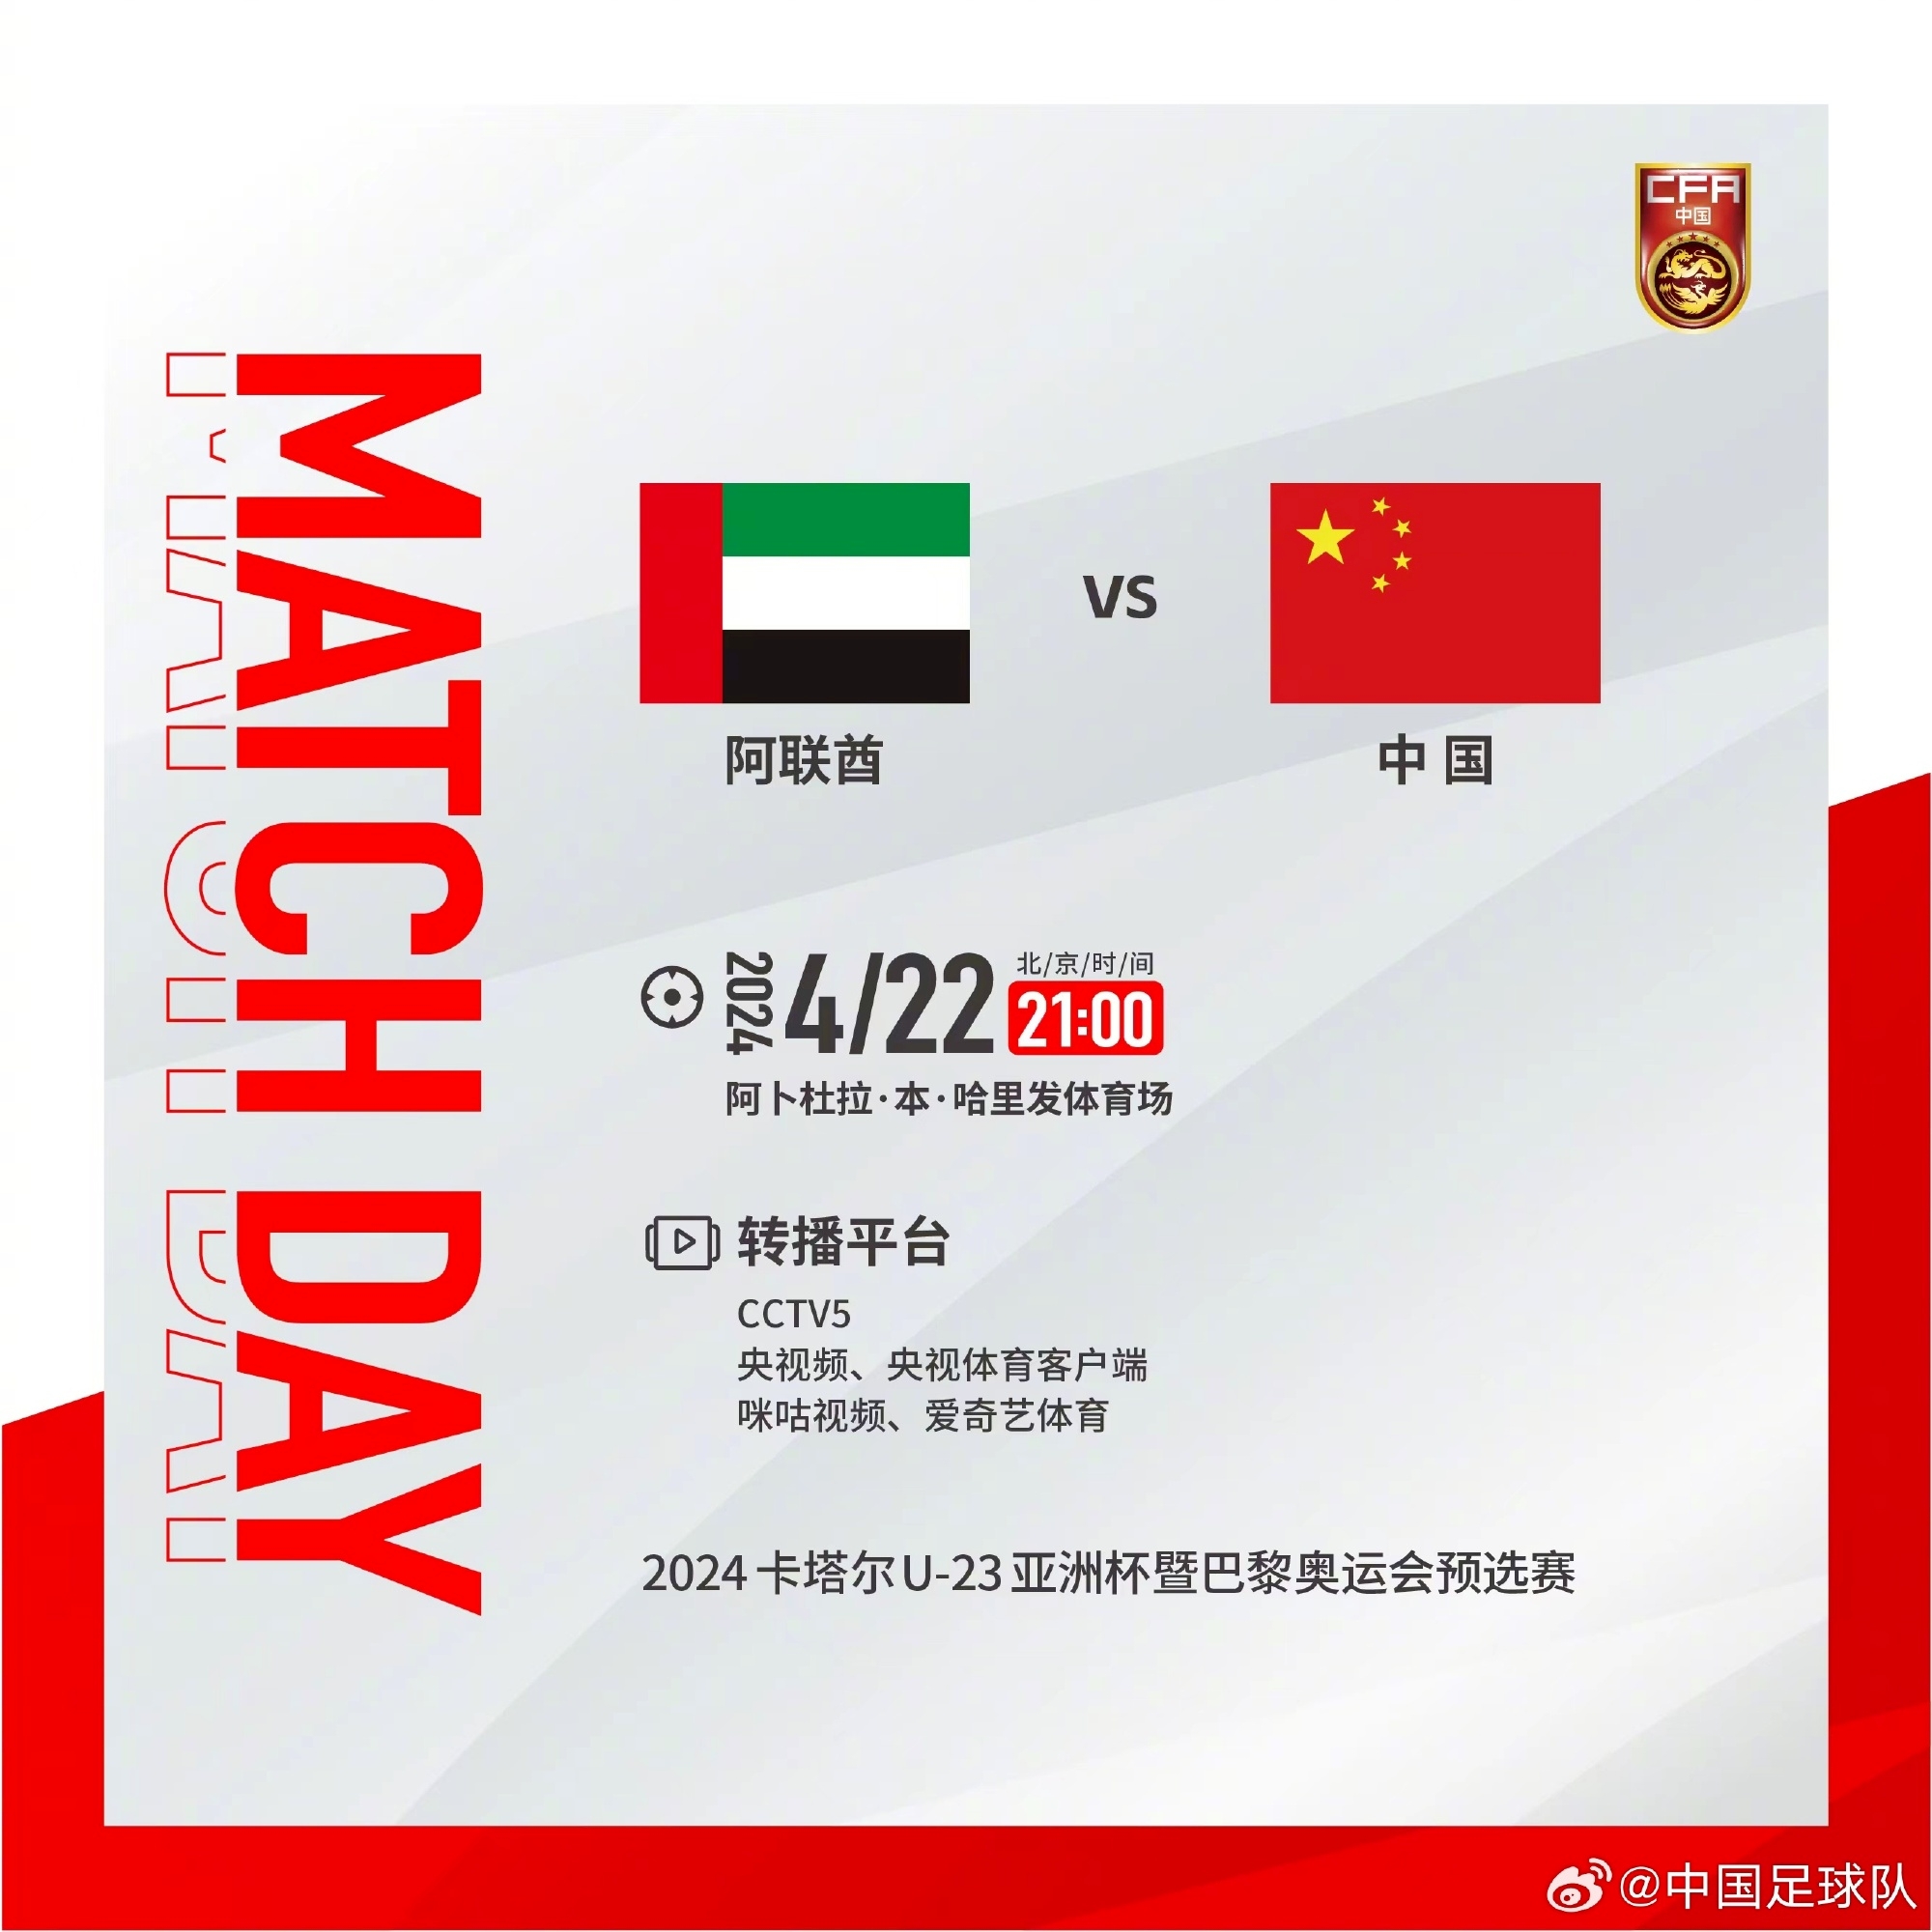 明天2100，中国奥林匹克男足迎战阿联酋队，一起为中国队加油！